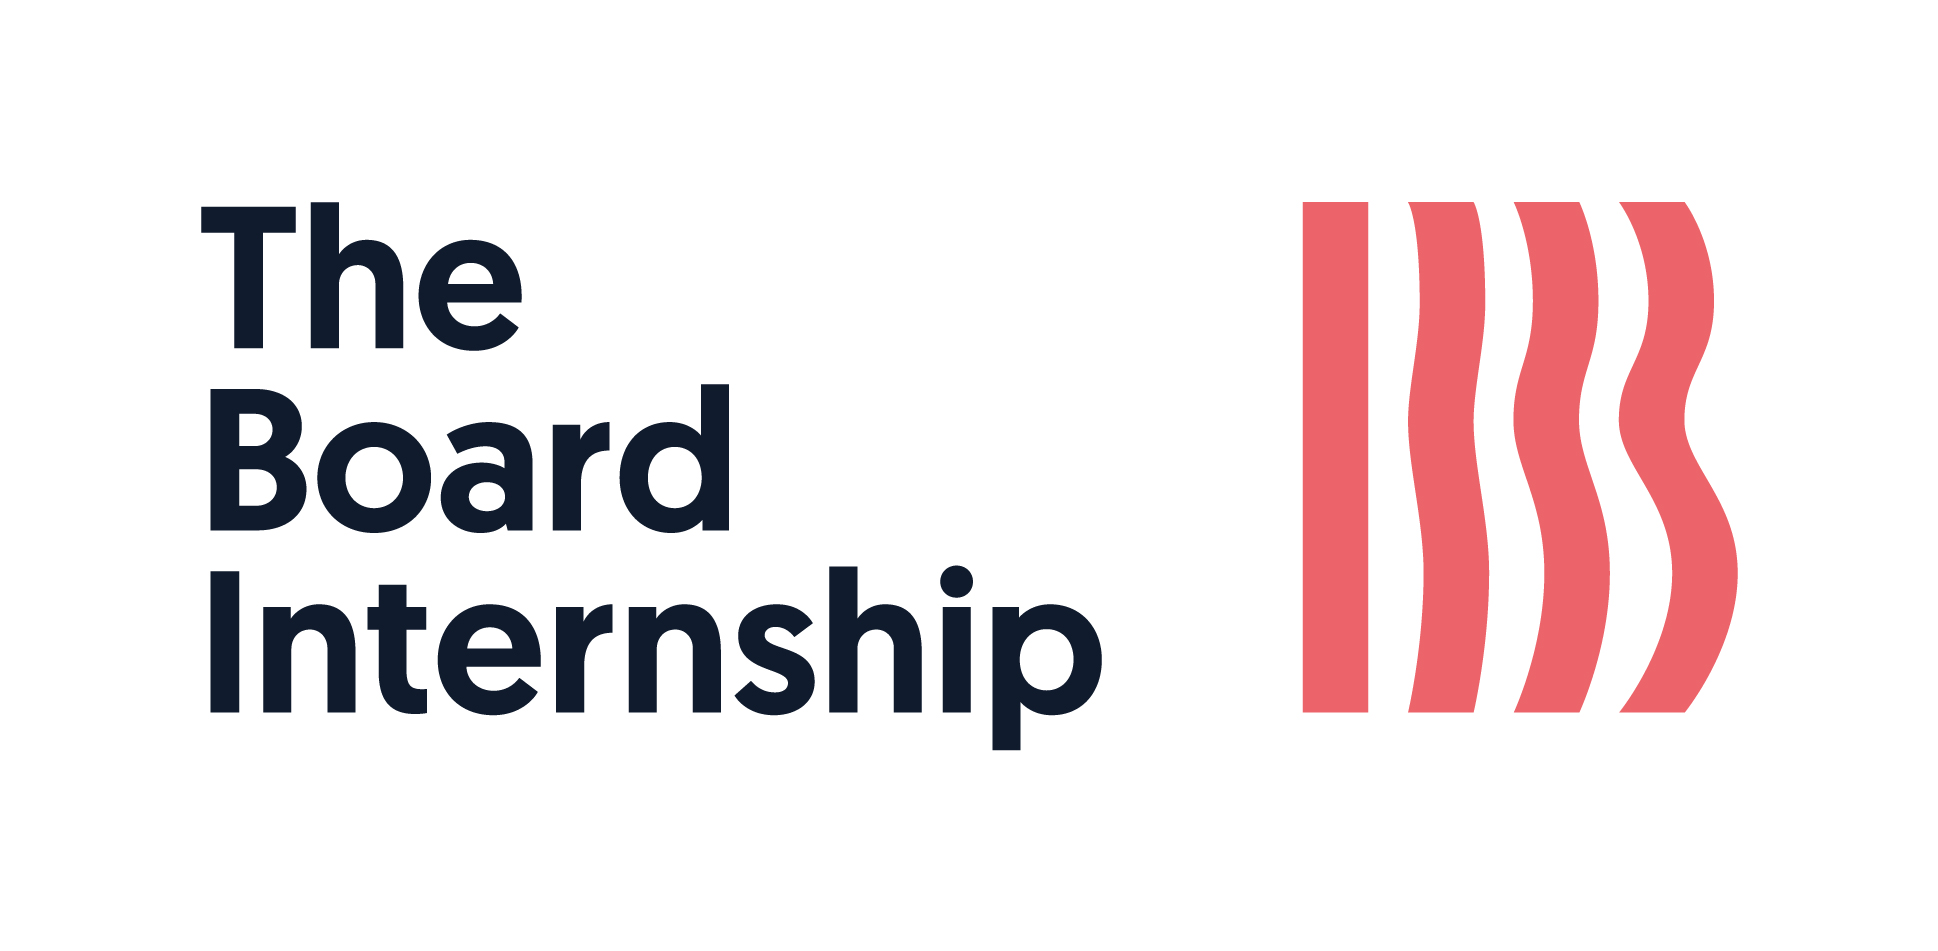 The Board Internship logo